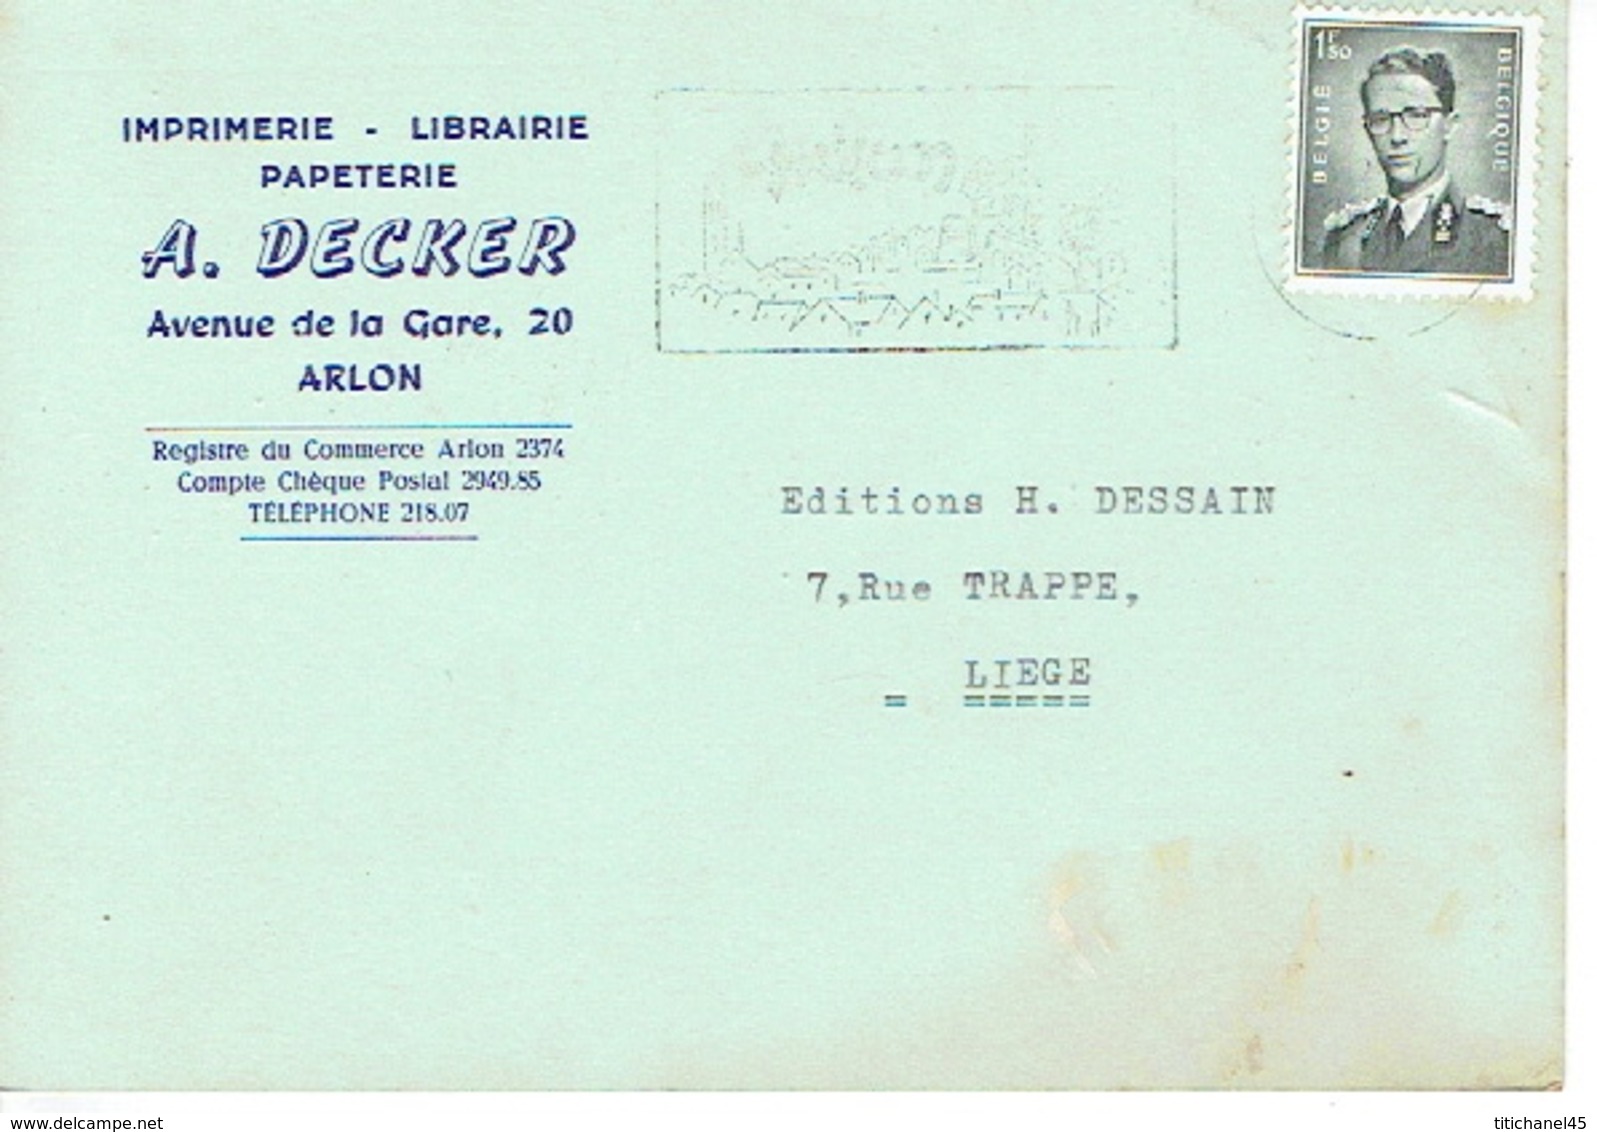 CP Publicitaire ARLON 1959 - A. DECKER - Imprimerie - Librairie - Papeterie - Arlon